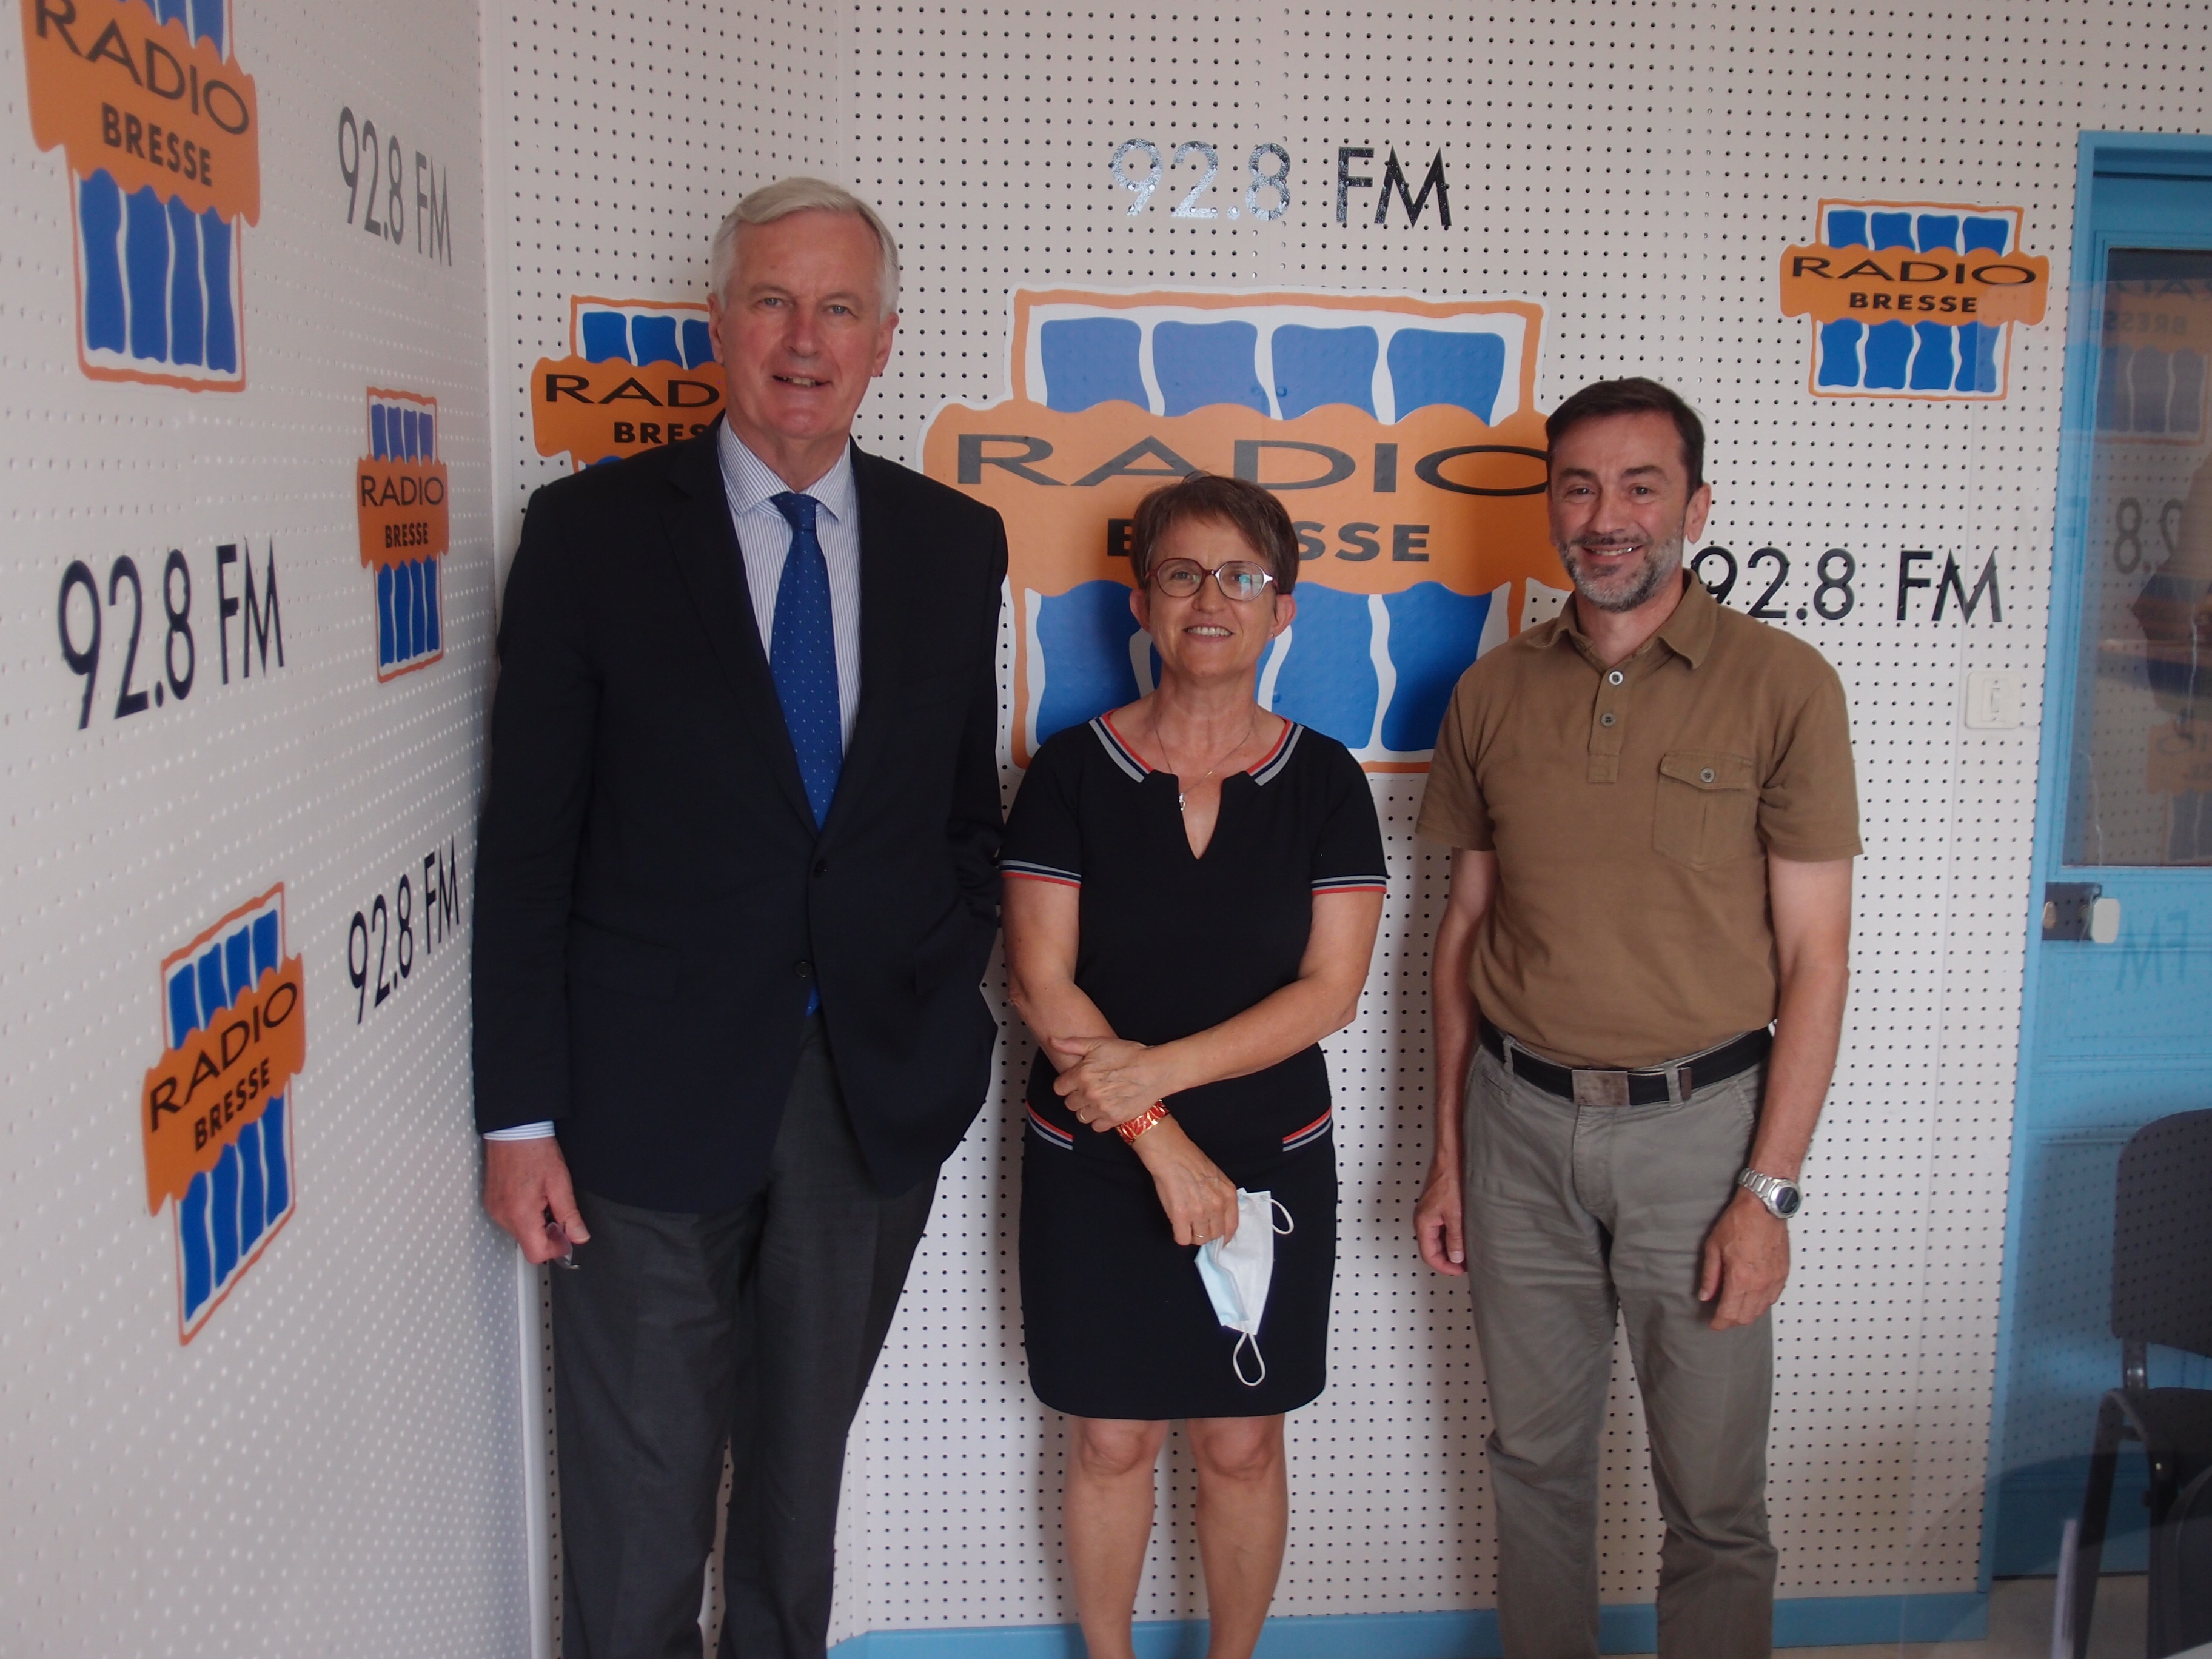 Michel Barnier, ancien ministre, Commissaire européen au Brexit dans les studios de radio Bresse